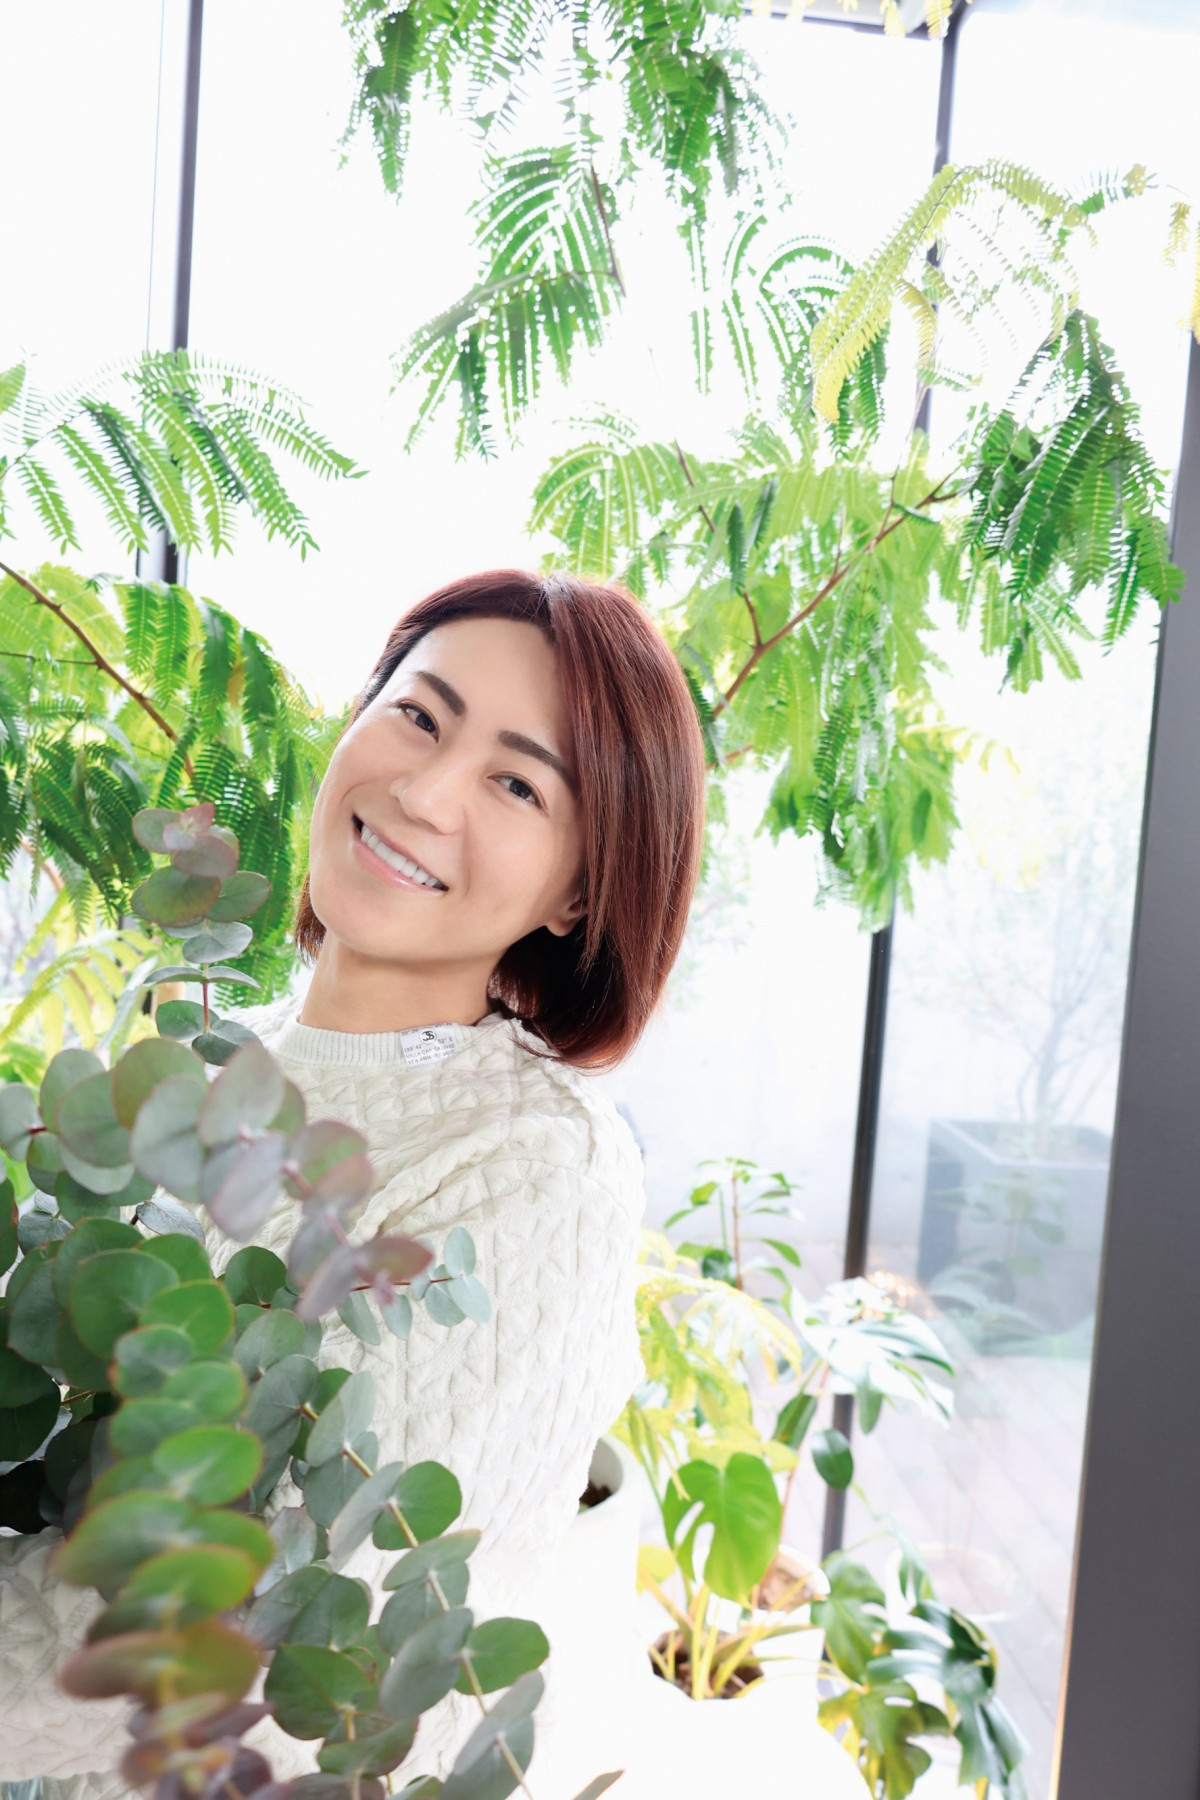 氷川きよし 趣味の園芸 新シーズンレギュラー 園芸名人 を目指す Oricon News